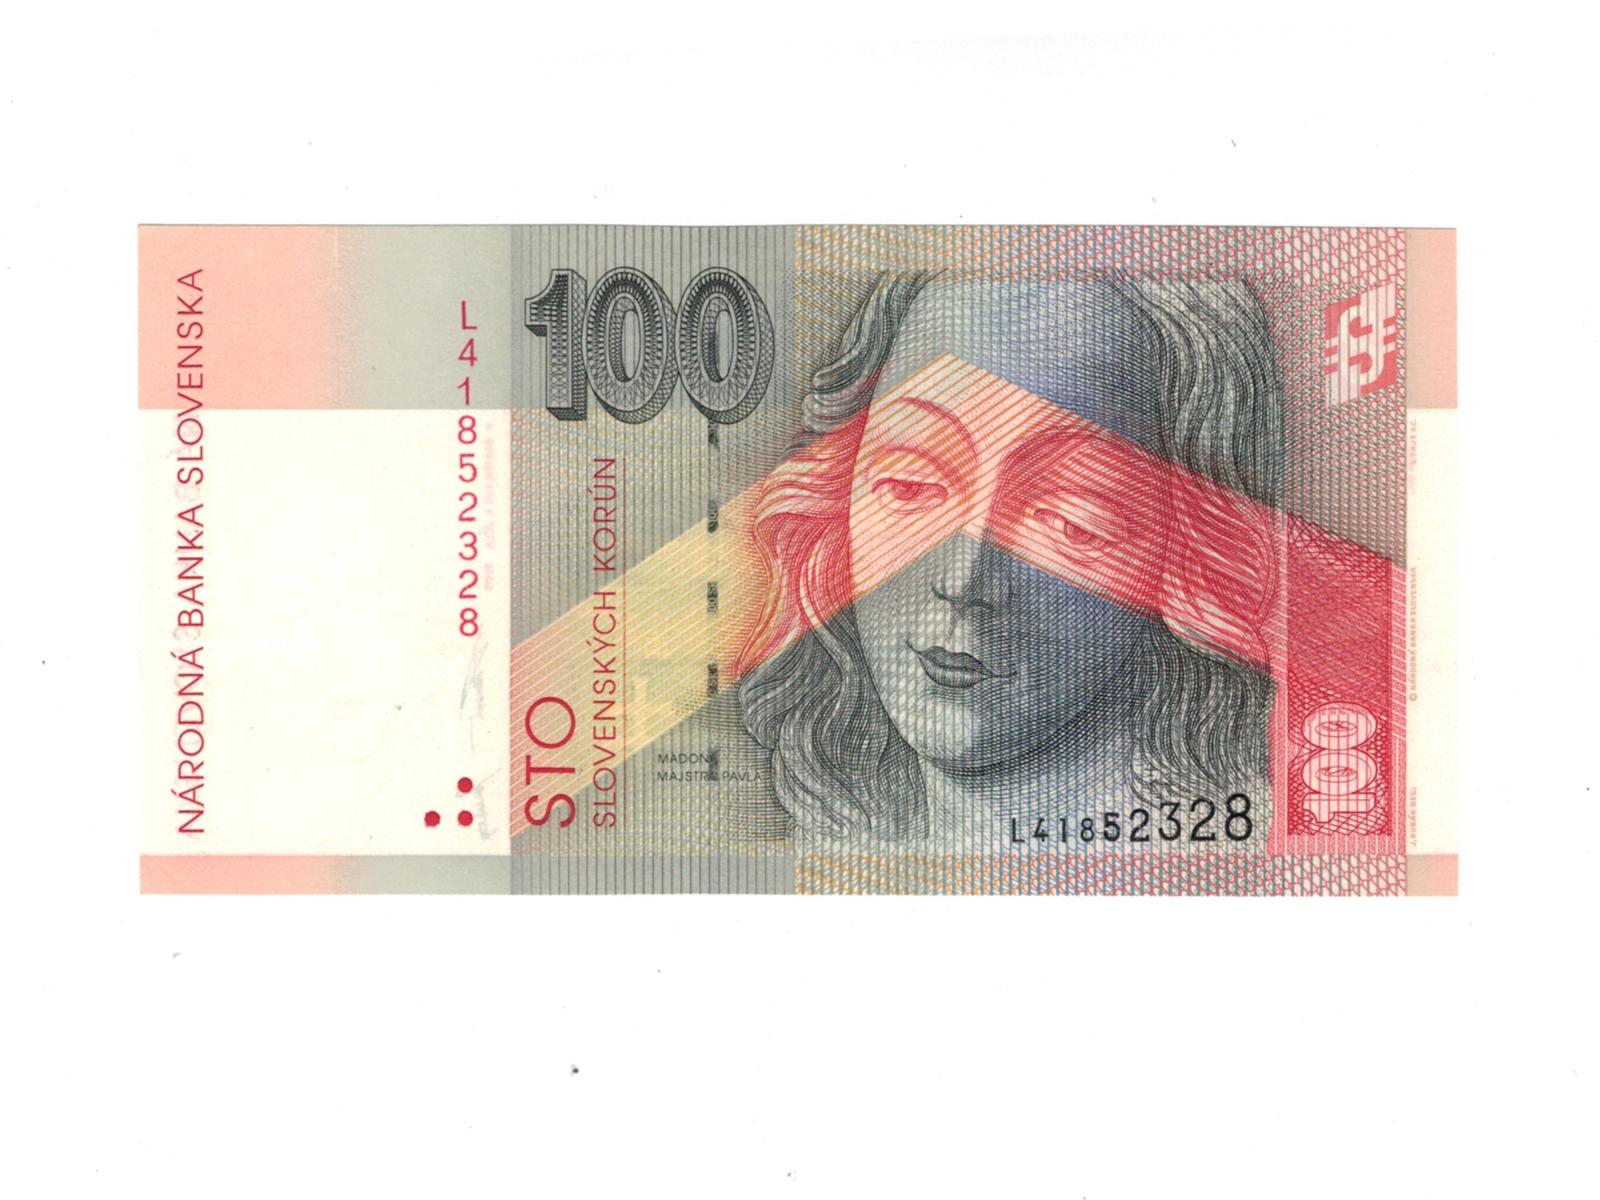 100 korún slovenských 1999 Séria L UNC